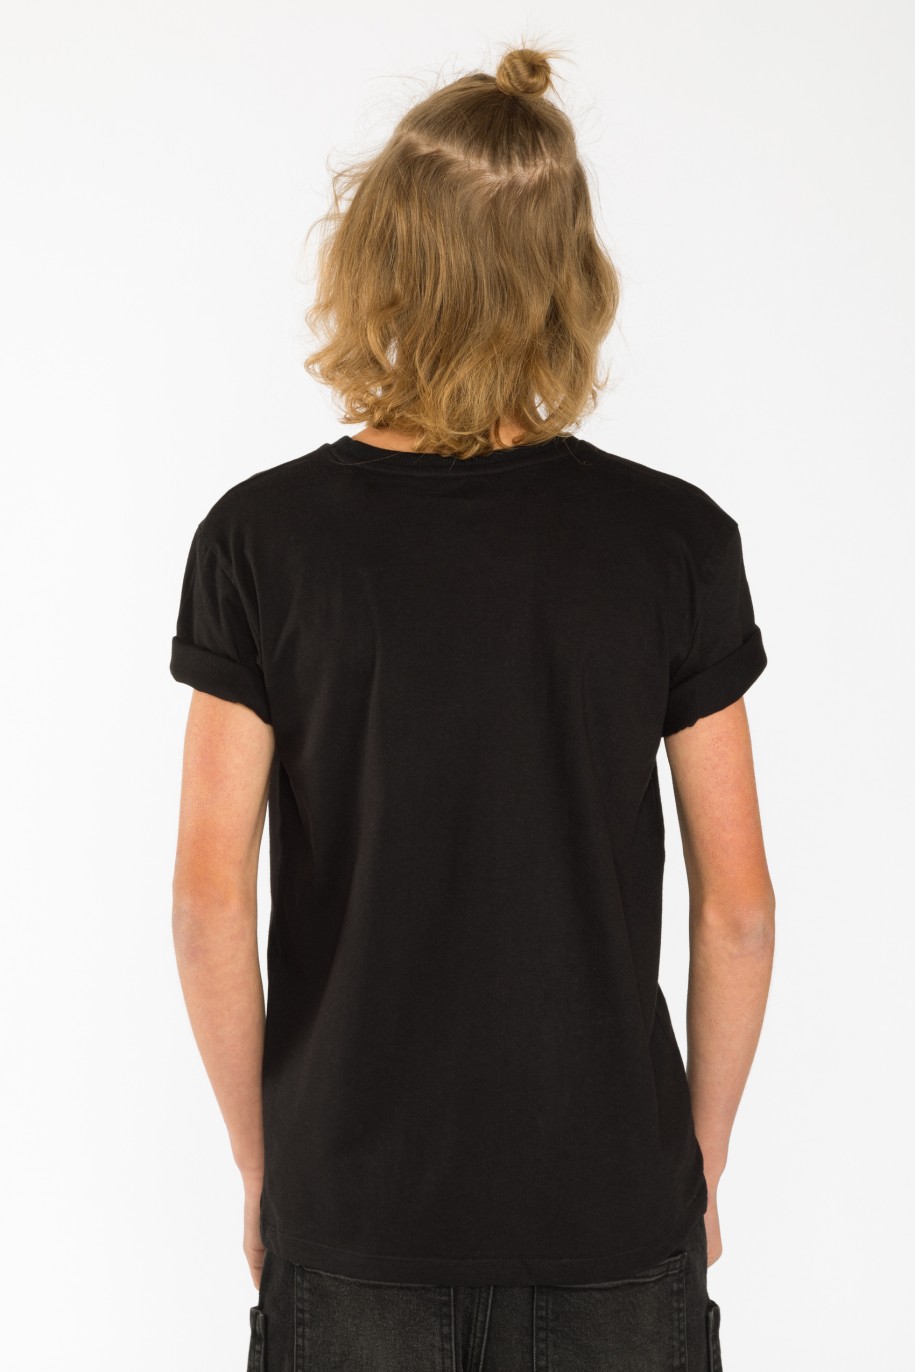 Czarny t-shirt dla chłopaka HAPPY HOLODAYS - 31180